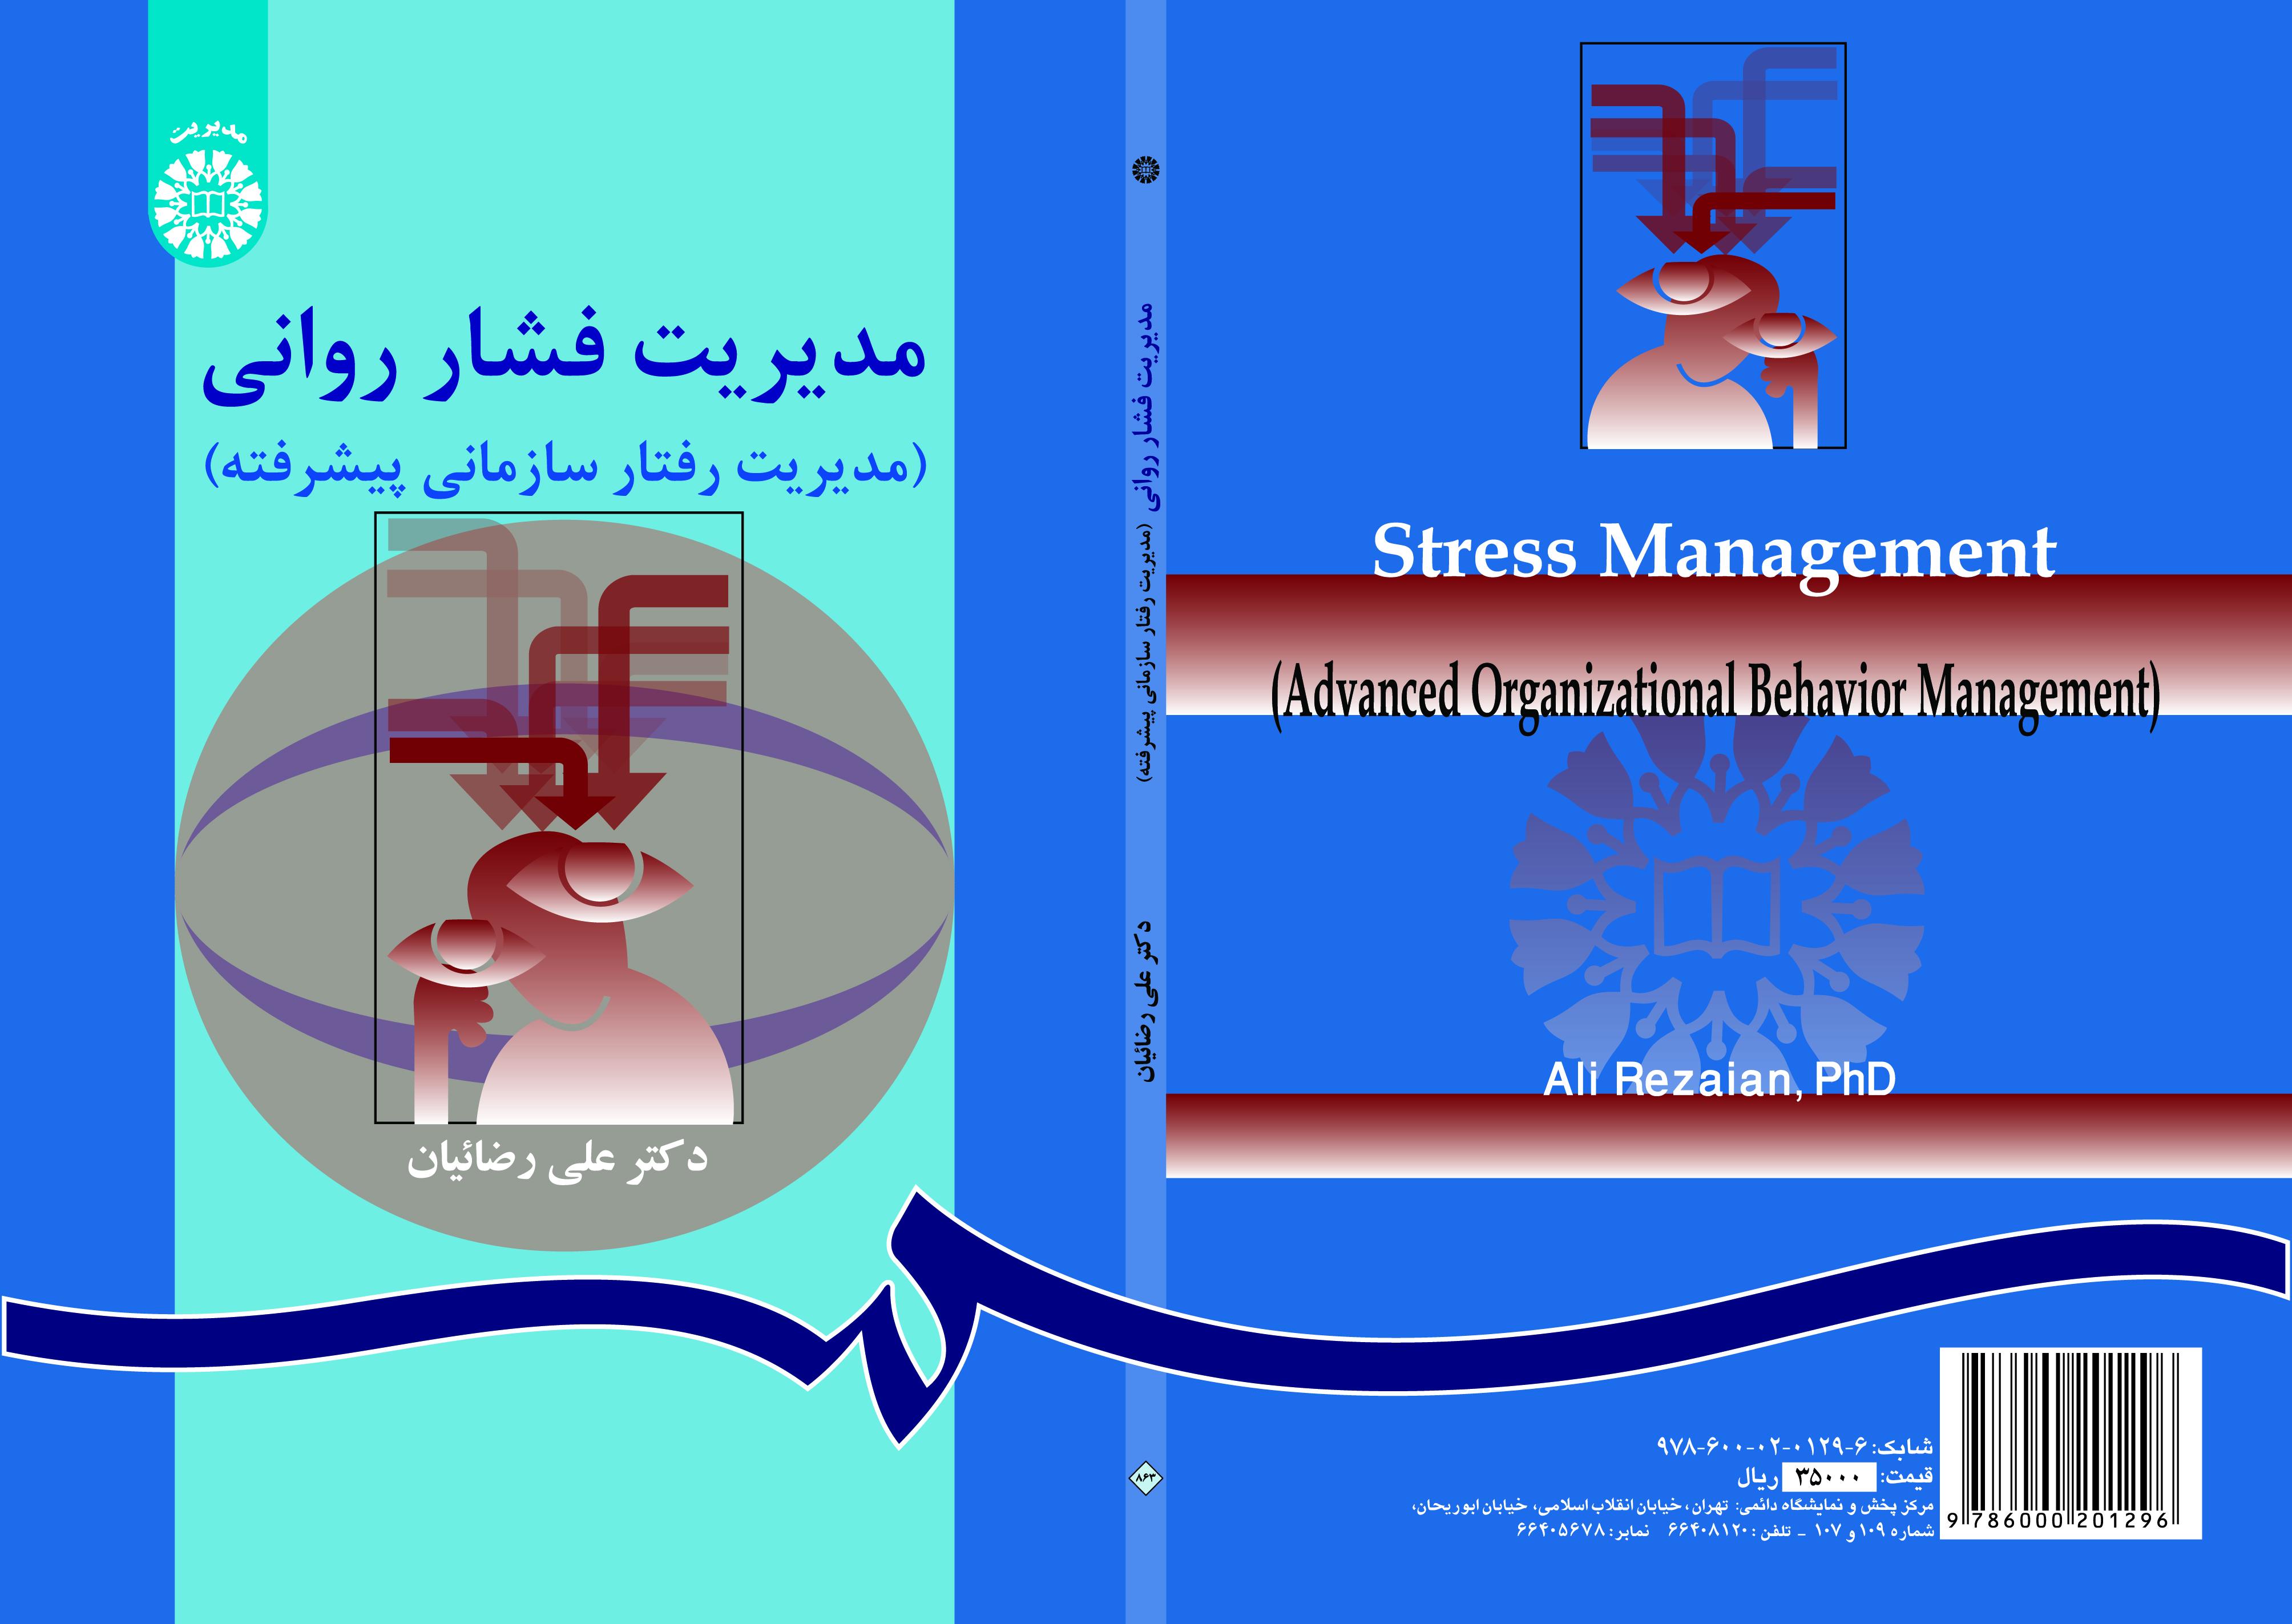 إدارة الضغط النفسي (إدارة السلوك التنظيمي المتقدمة)